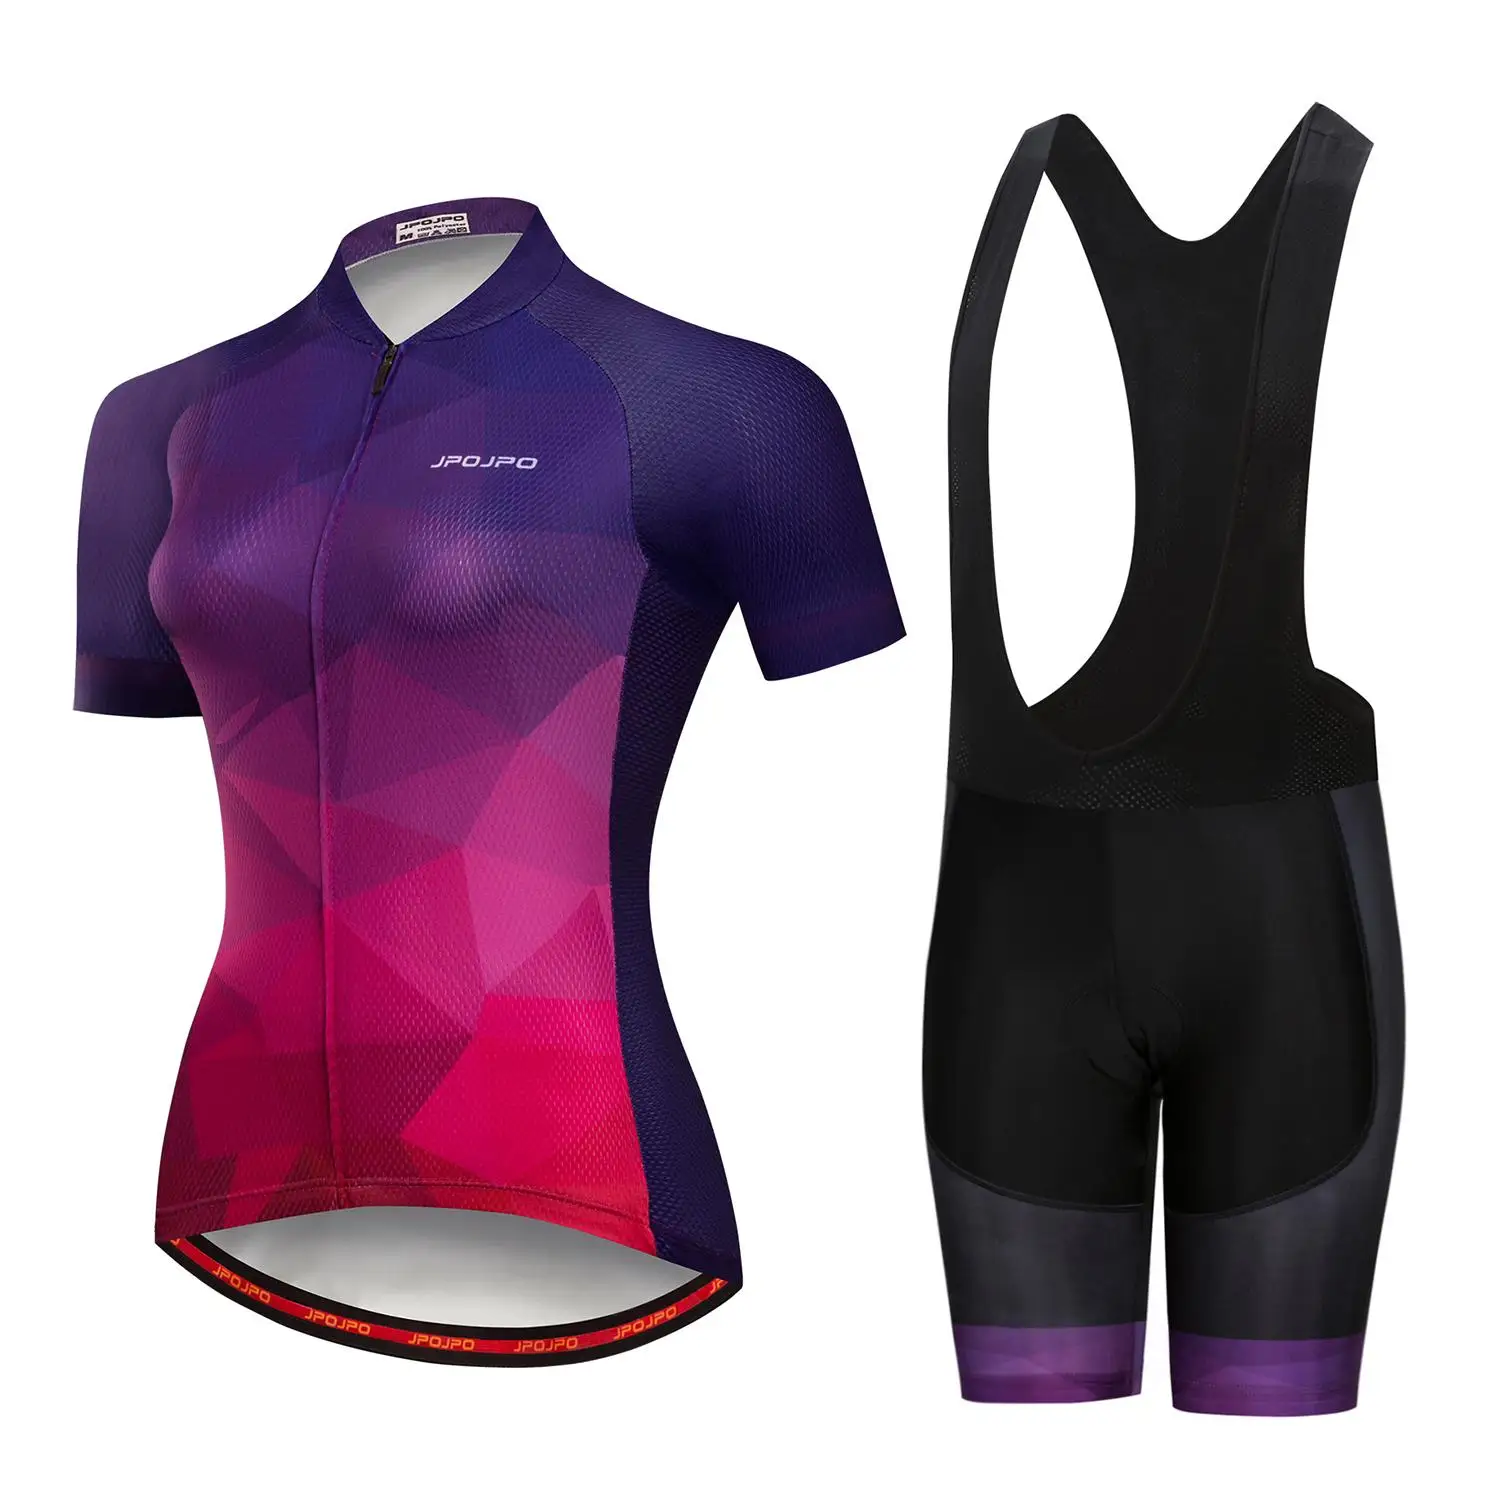 JPOJPO летом 2018 Pro велосипед команда короткий рукав Для женщин Джерси велосипедные шорты MTB комплекты леди Ропа Ciclismo велосипедный спорт одежда